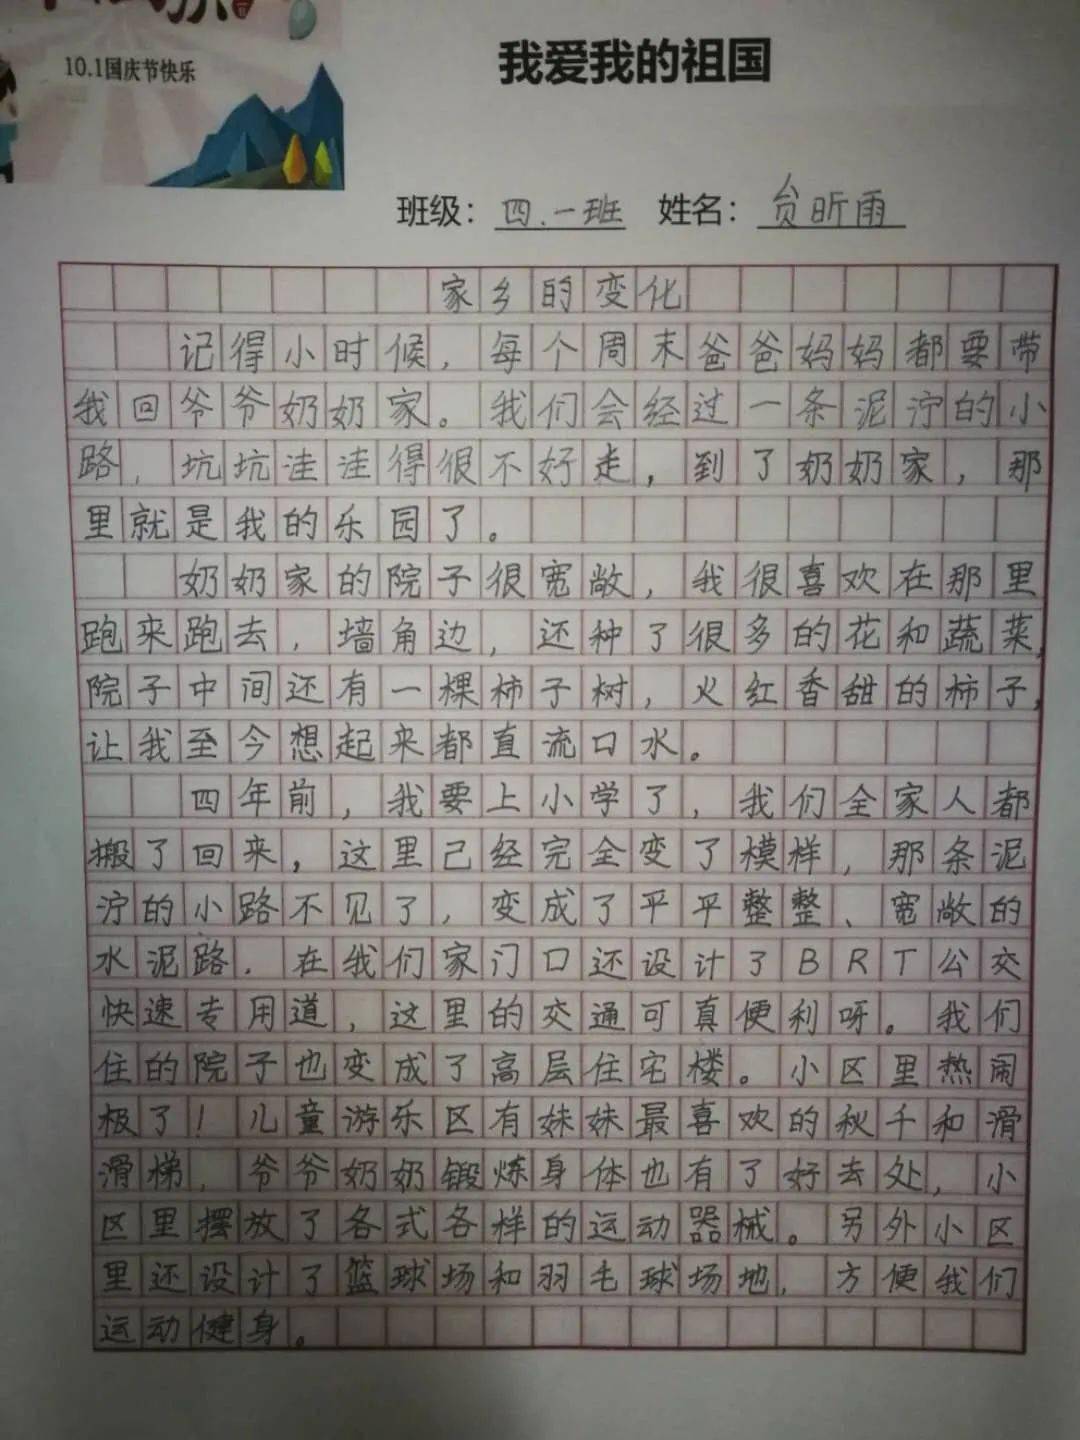 在"写国庆"征文活动中,4年级学生用真